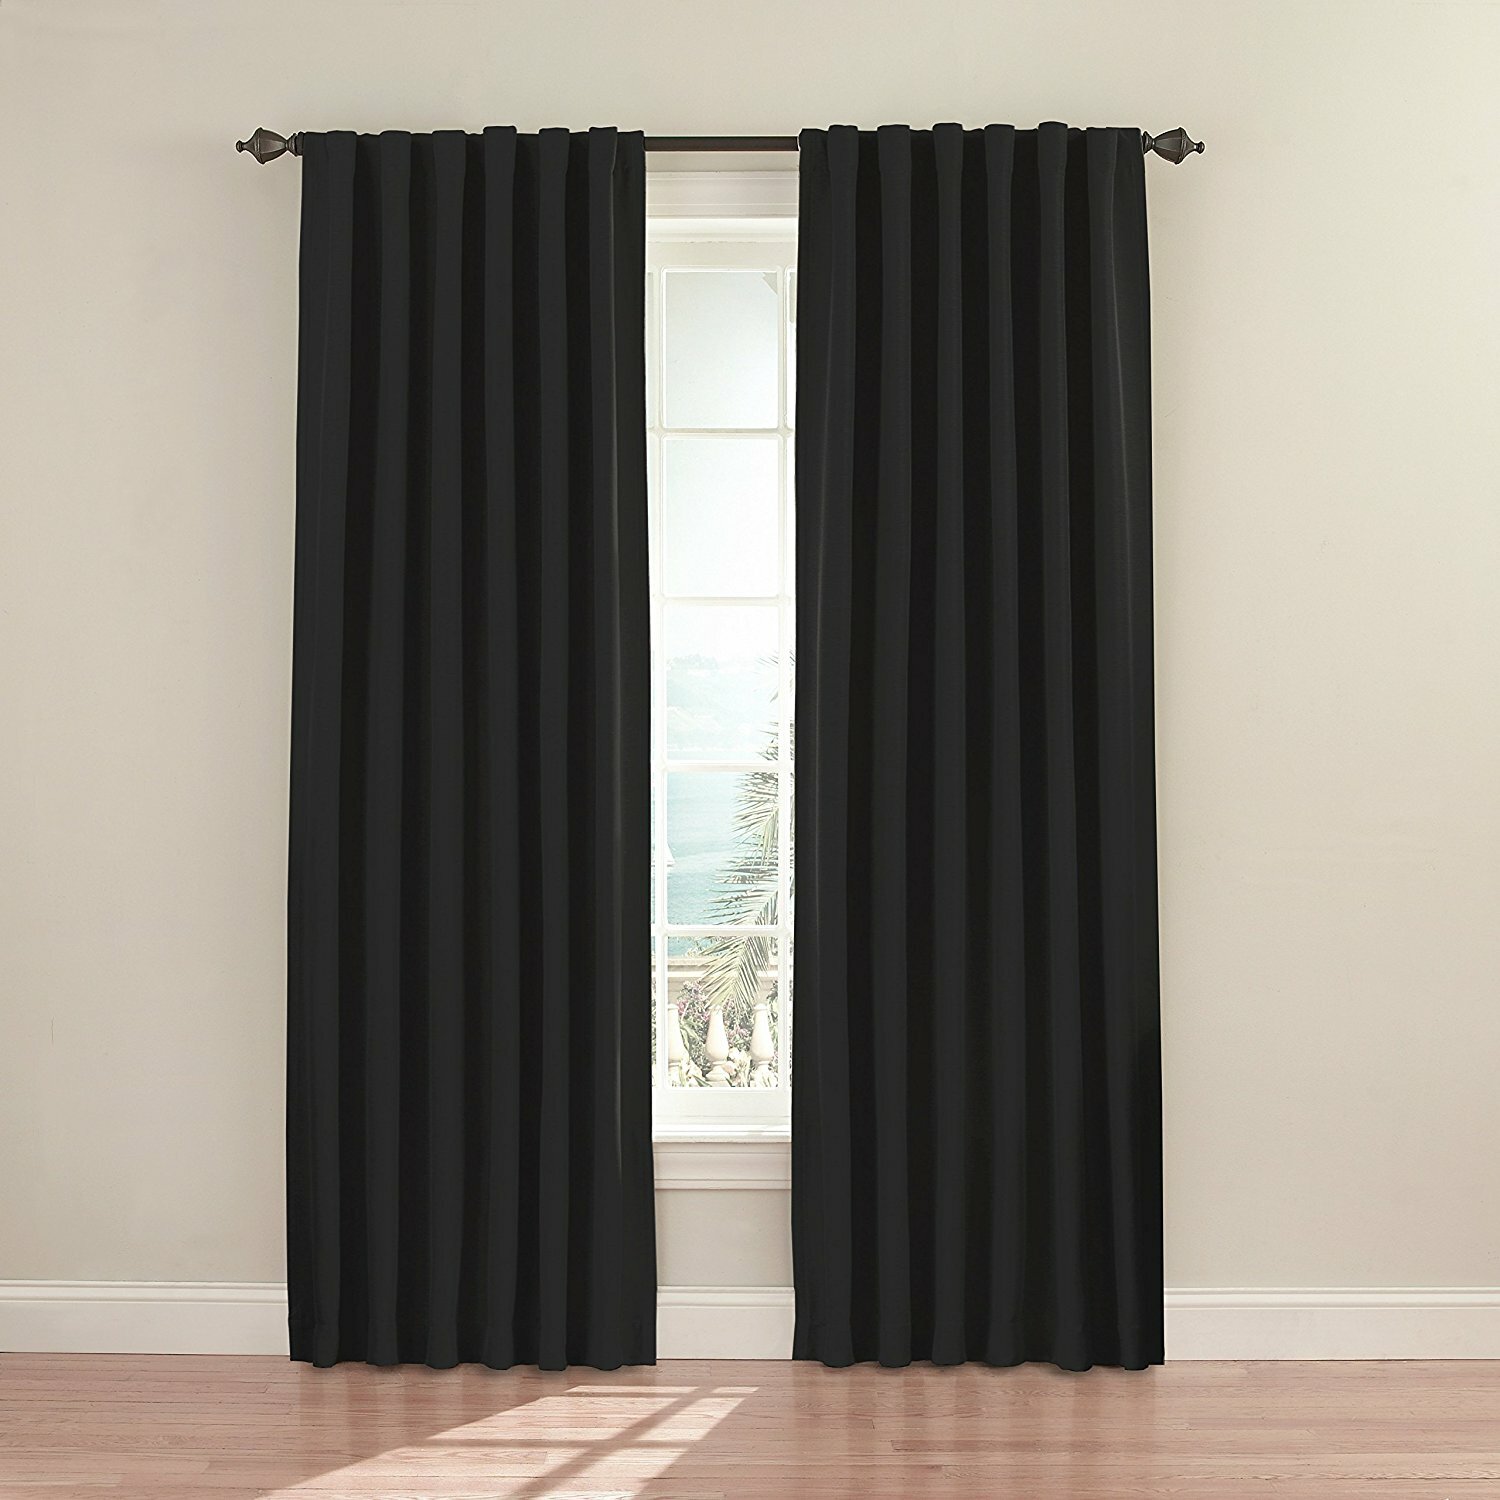 Inexpensive Blackout Curtains | Drapes Blackout | Cheap Blackout Curtains